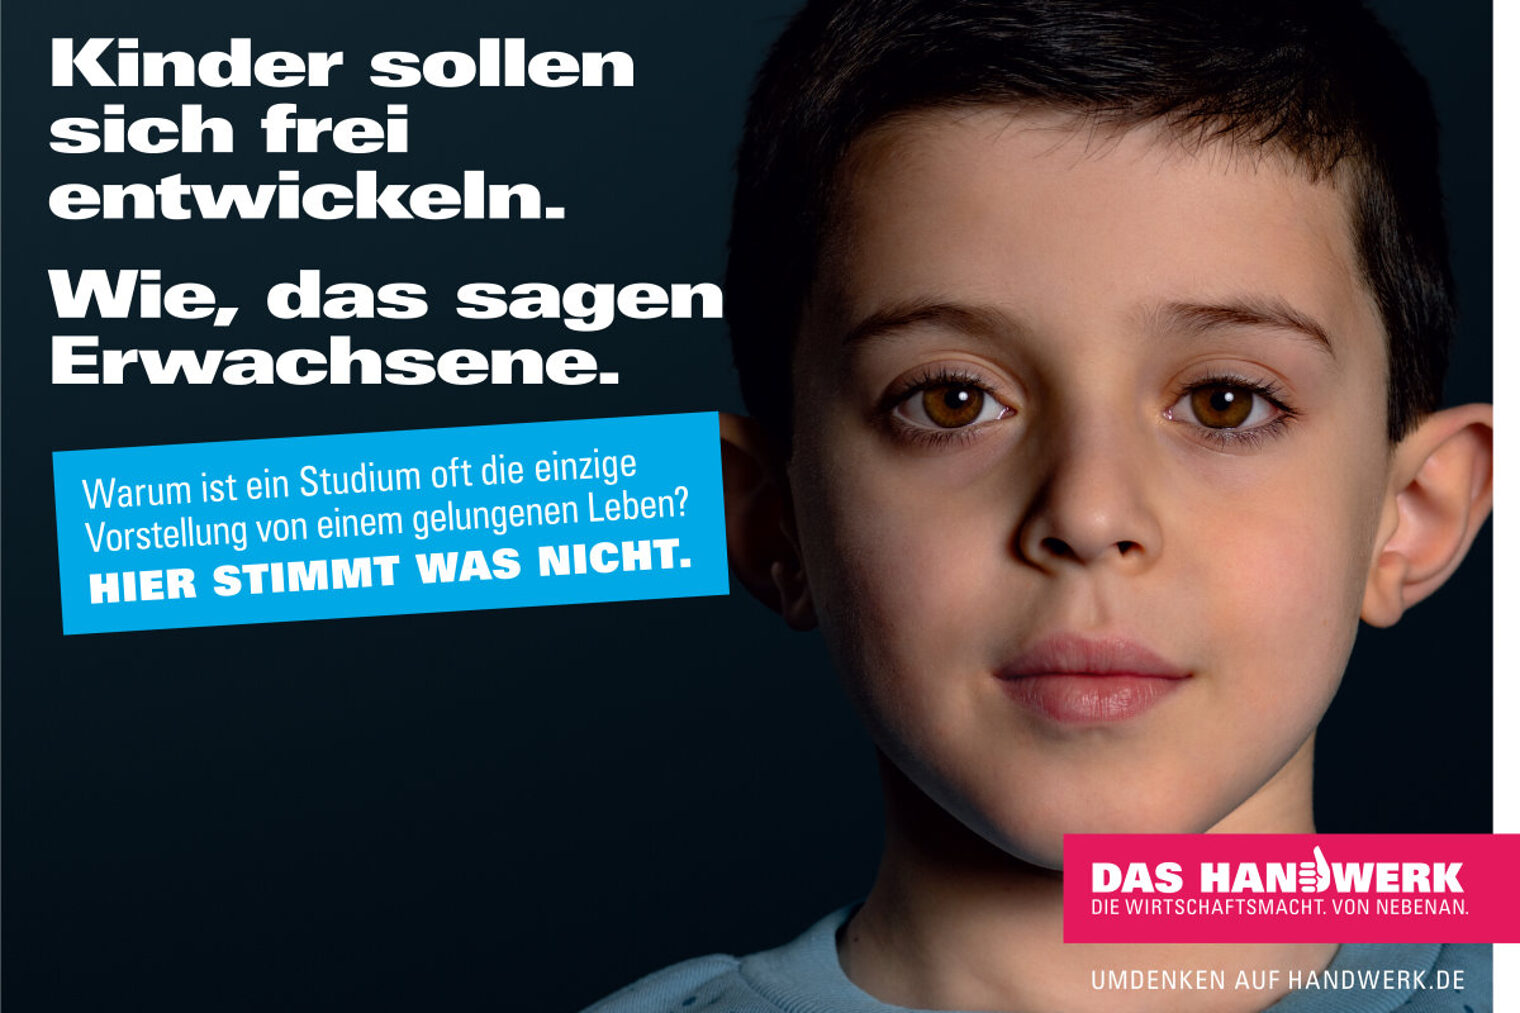 Anzeigenmotiv zeigt Gesicht von kleinem Jungen vor schwarzem Hintergrund, mit weißer Schrift, blauer Fläche und rotem Logo.